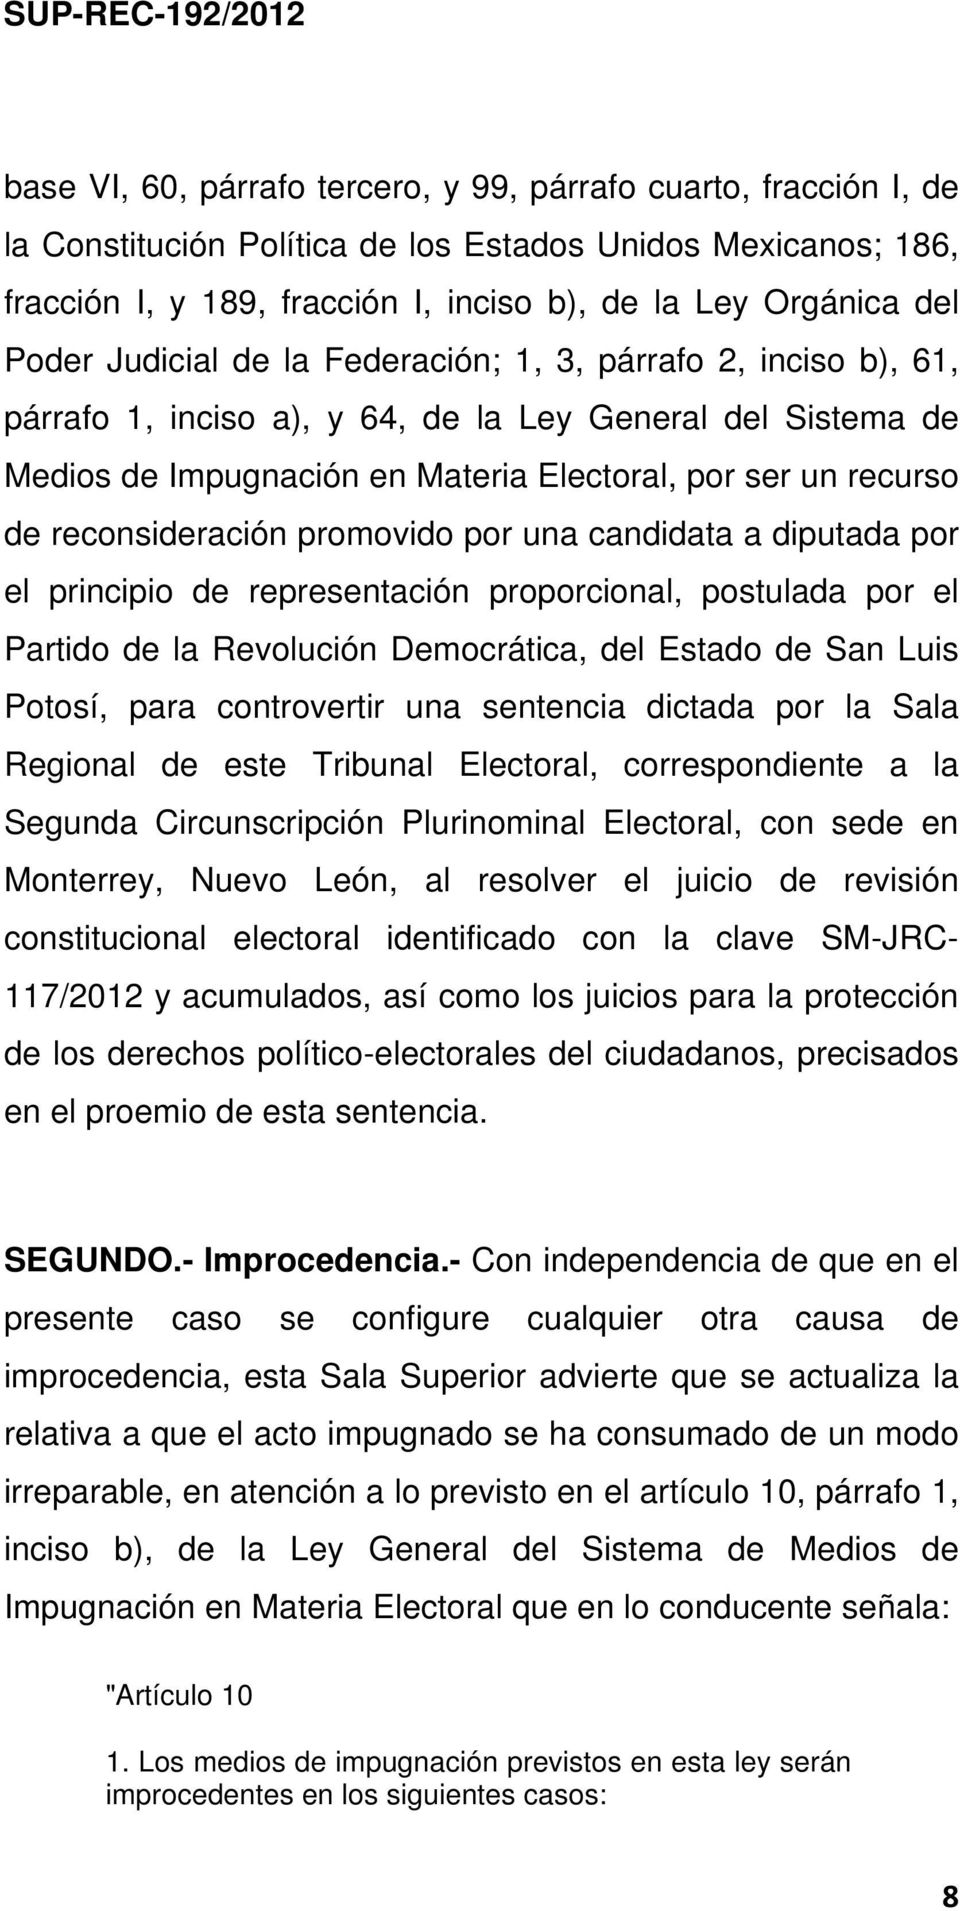 reconsideración promovido por una candidata a diputada por el principio de representación proporcional, postulada por el Partido de la Revolución Democrática, del Estado de San Luis Potosí, para